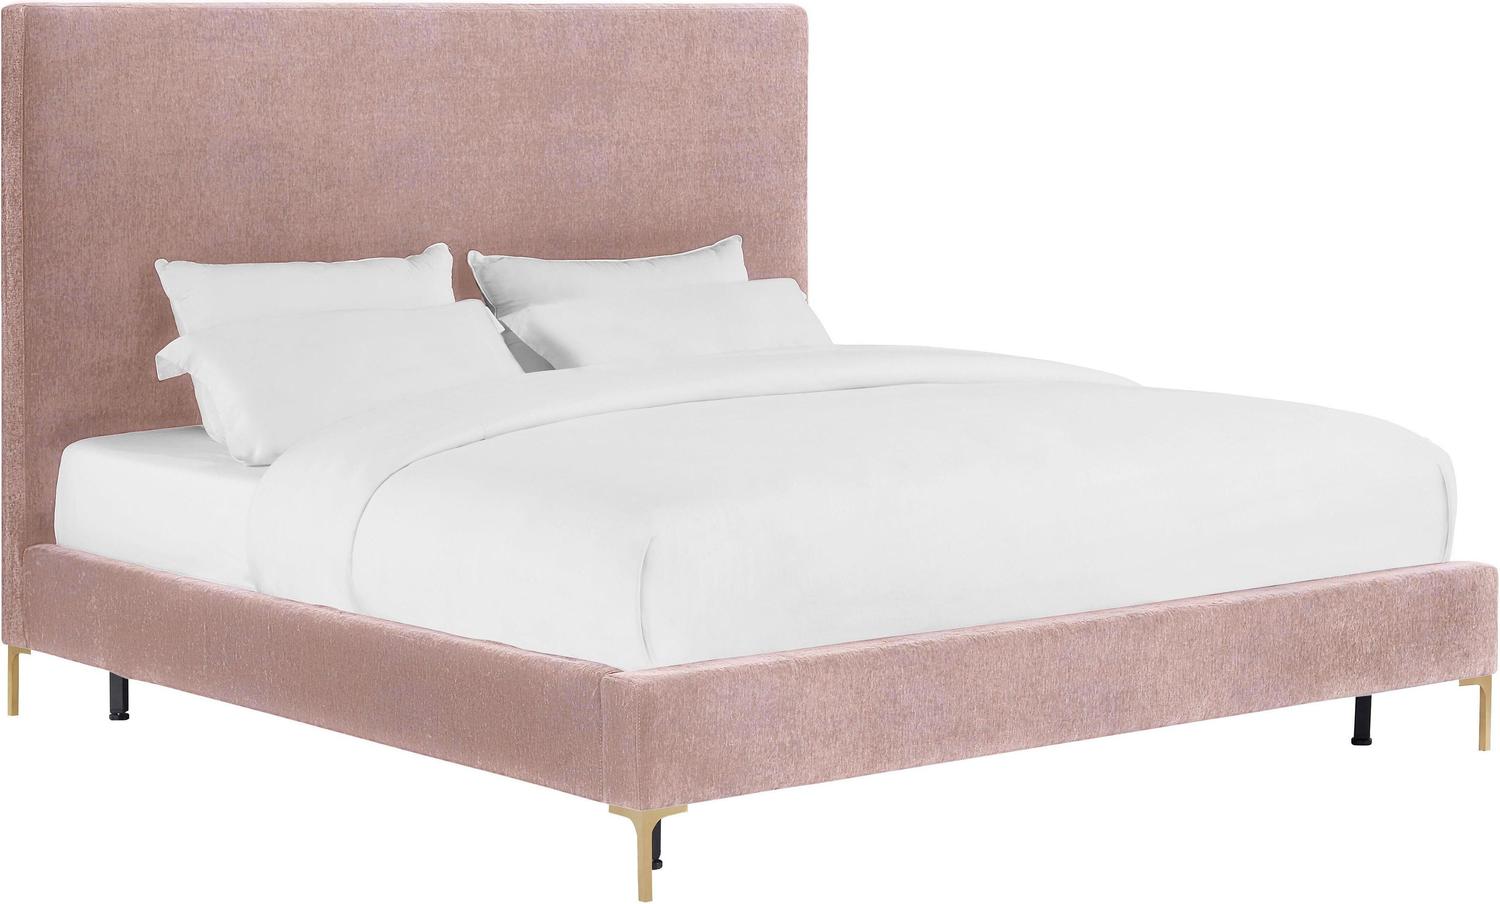 king bed platform with headboard Tov Furniture Beds Beds Blush